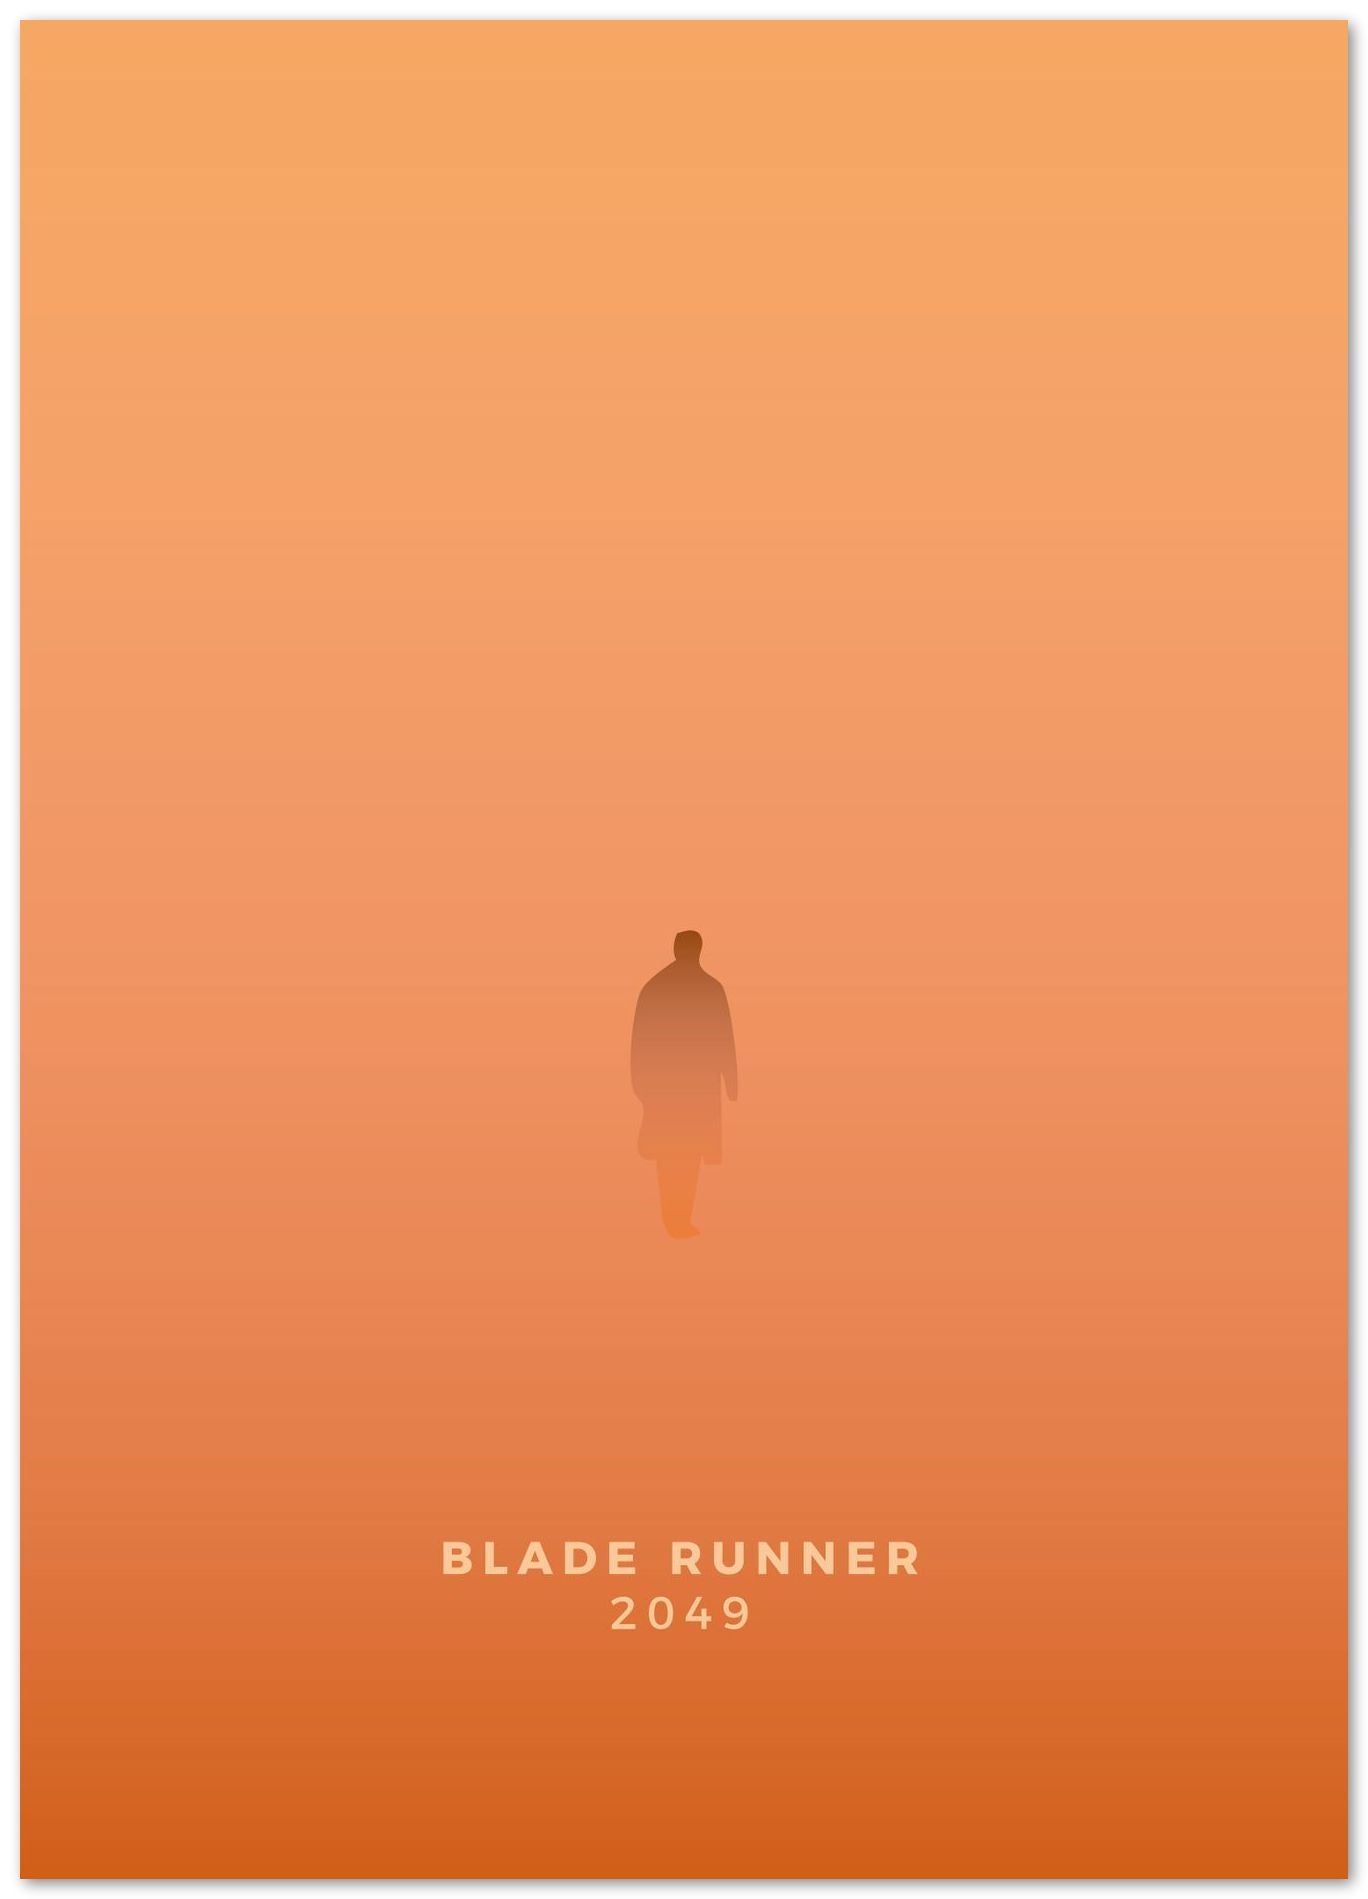 Blade Runner 2049 - @donluisjimenez